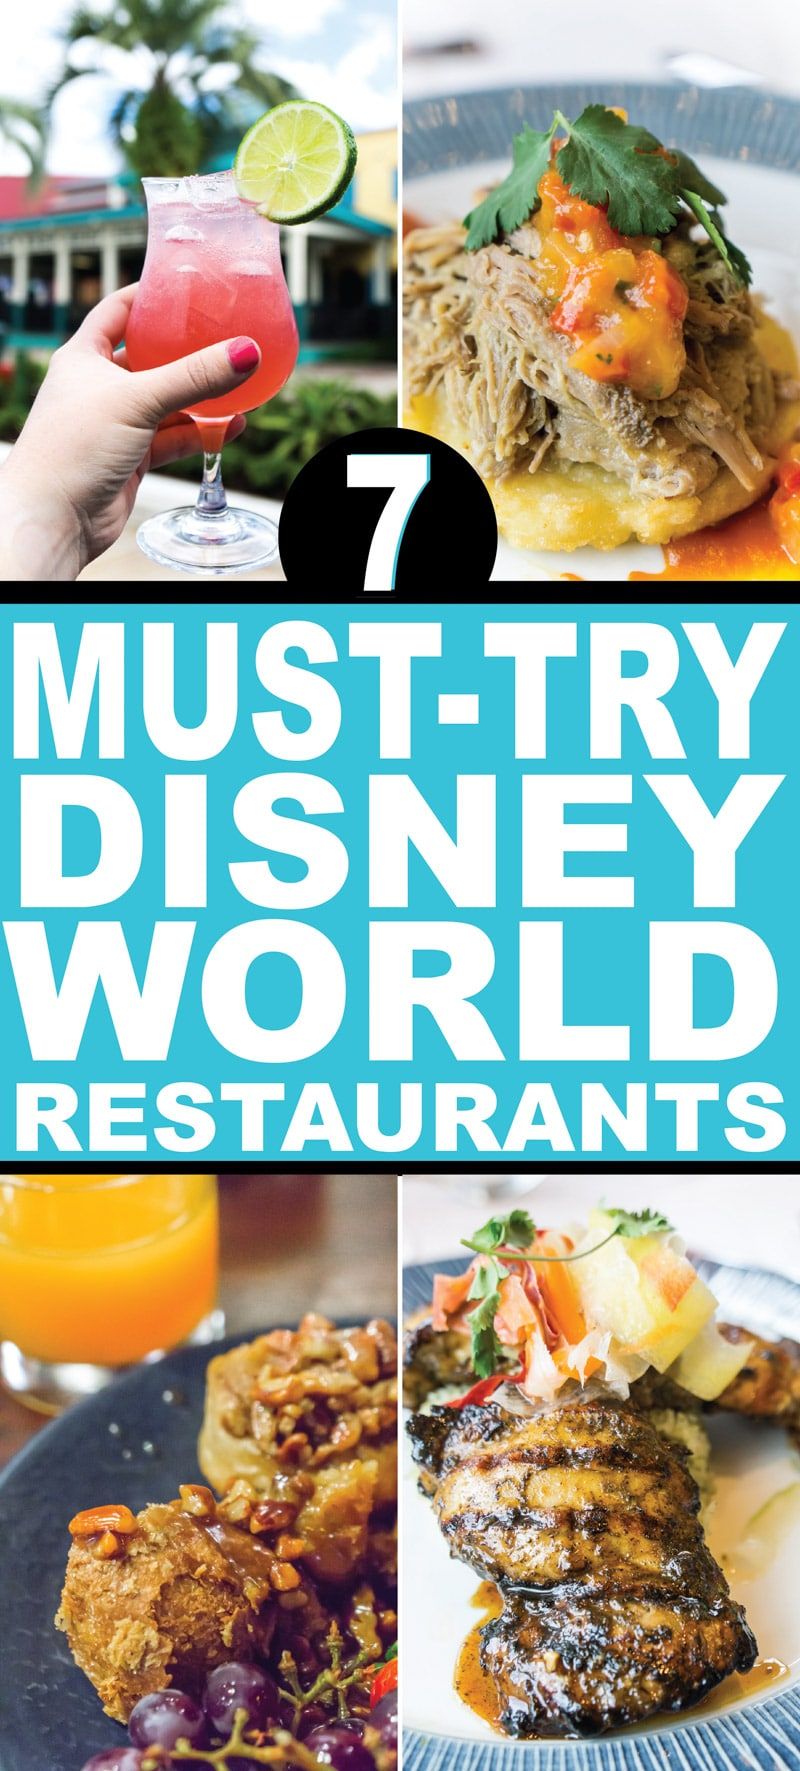 Una llista fantàstica dels millors restaurants de taula de Disney World per a adults amb menús obligatoris dels menús, tant si tenen un pla de menjador com si no, informació sobre el menú i molt més. Heu de provar tots aquests restaurants almenys una vegada.